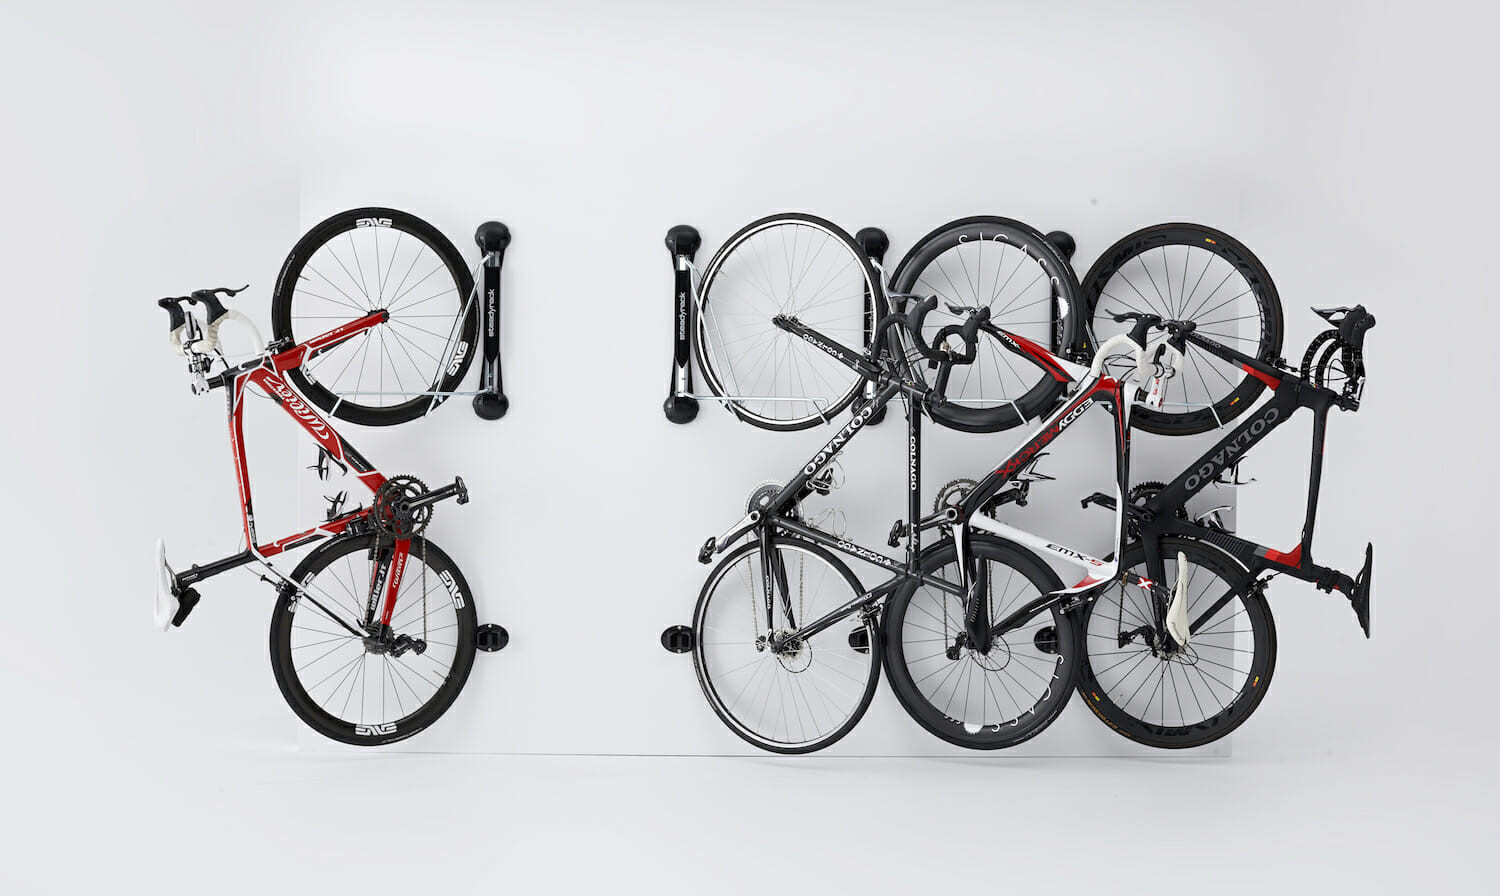 Best ideas about Bike Storage Garage
. Save or Pin Garage Bike Racks Now.